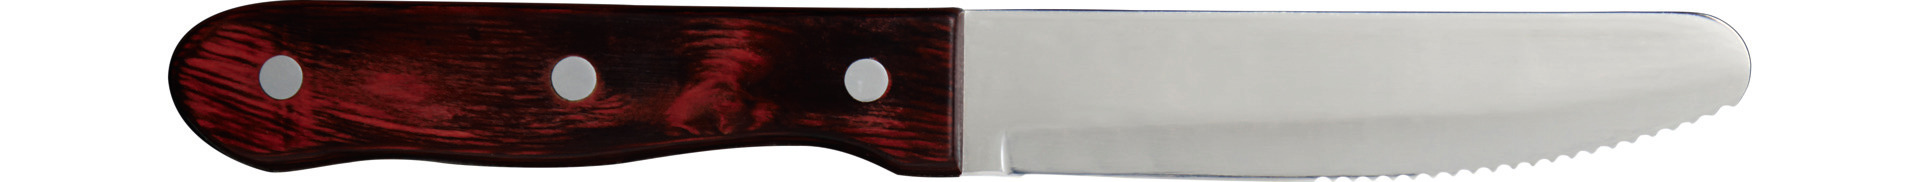 Steakmesser 250 mm Wellenschliff gerundete Klinge, Griff aus Pakkaholz